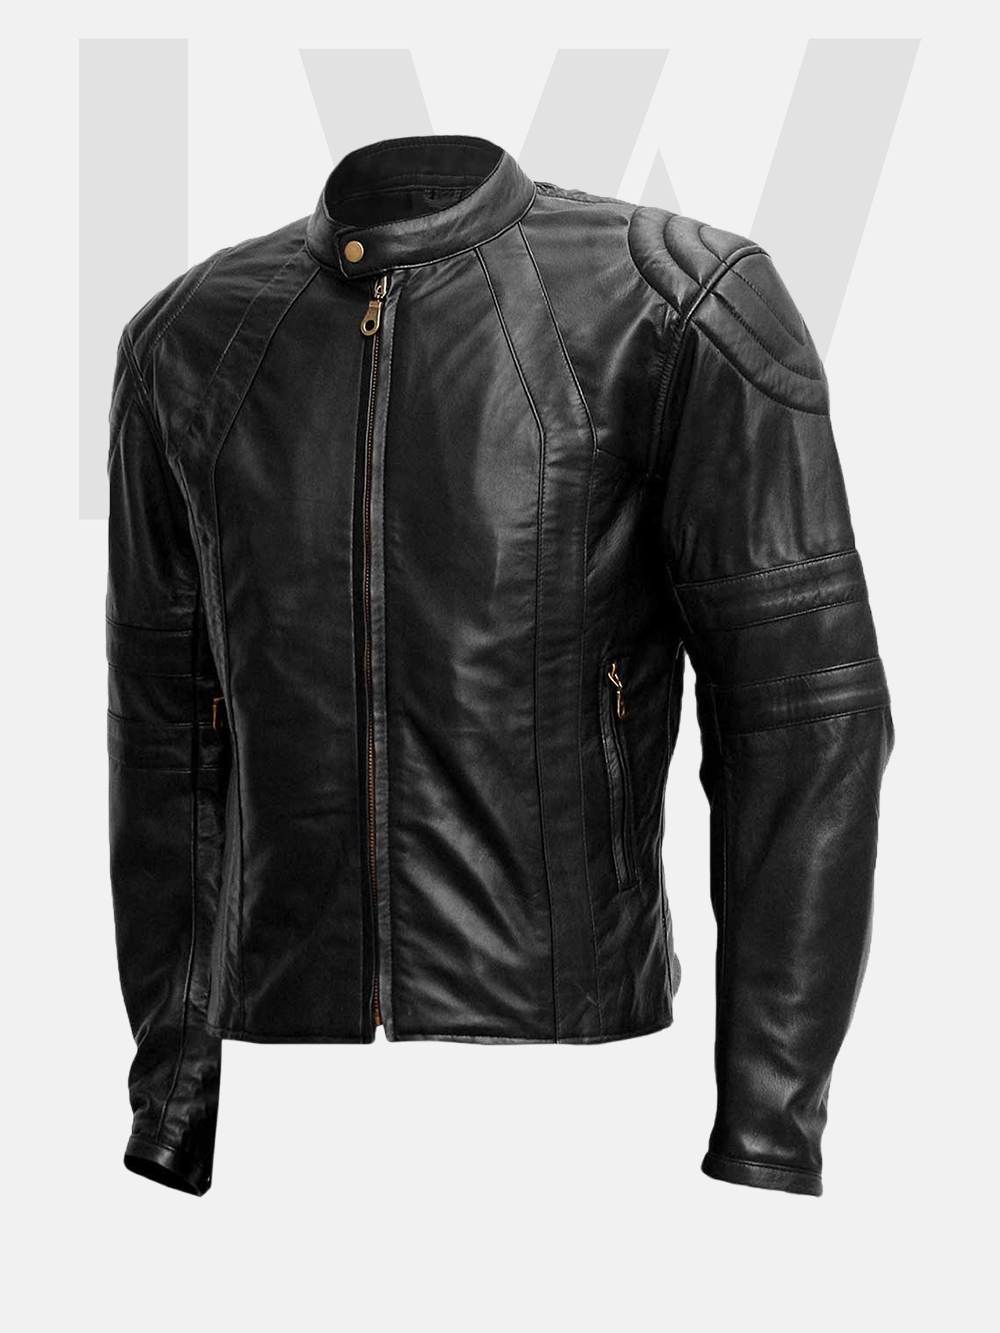 Marlin Black Leather Biker Jacket Men - Leathwear